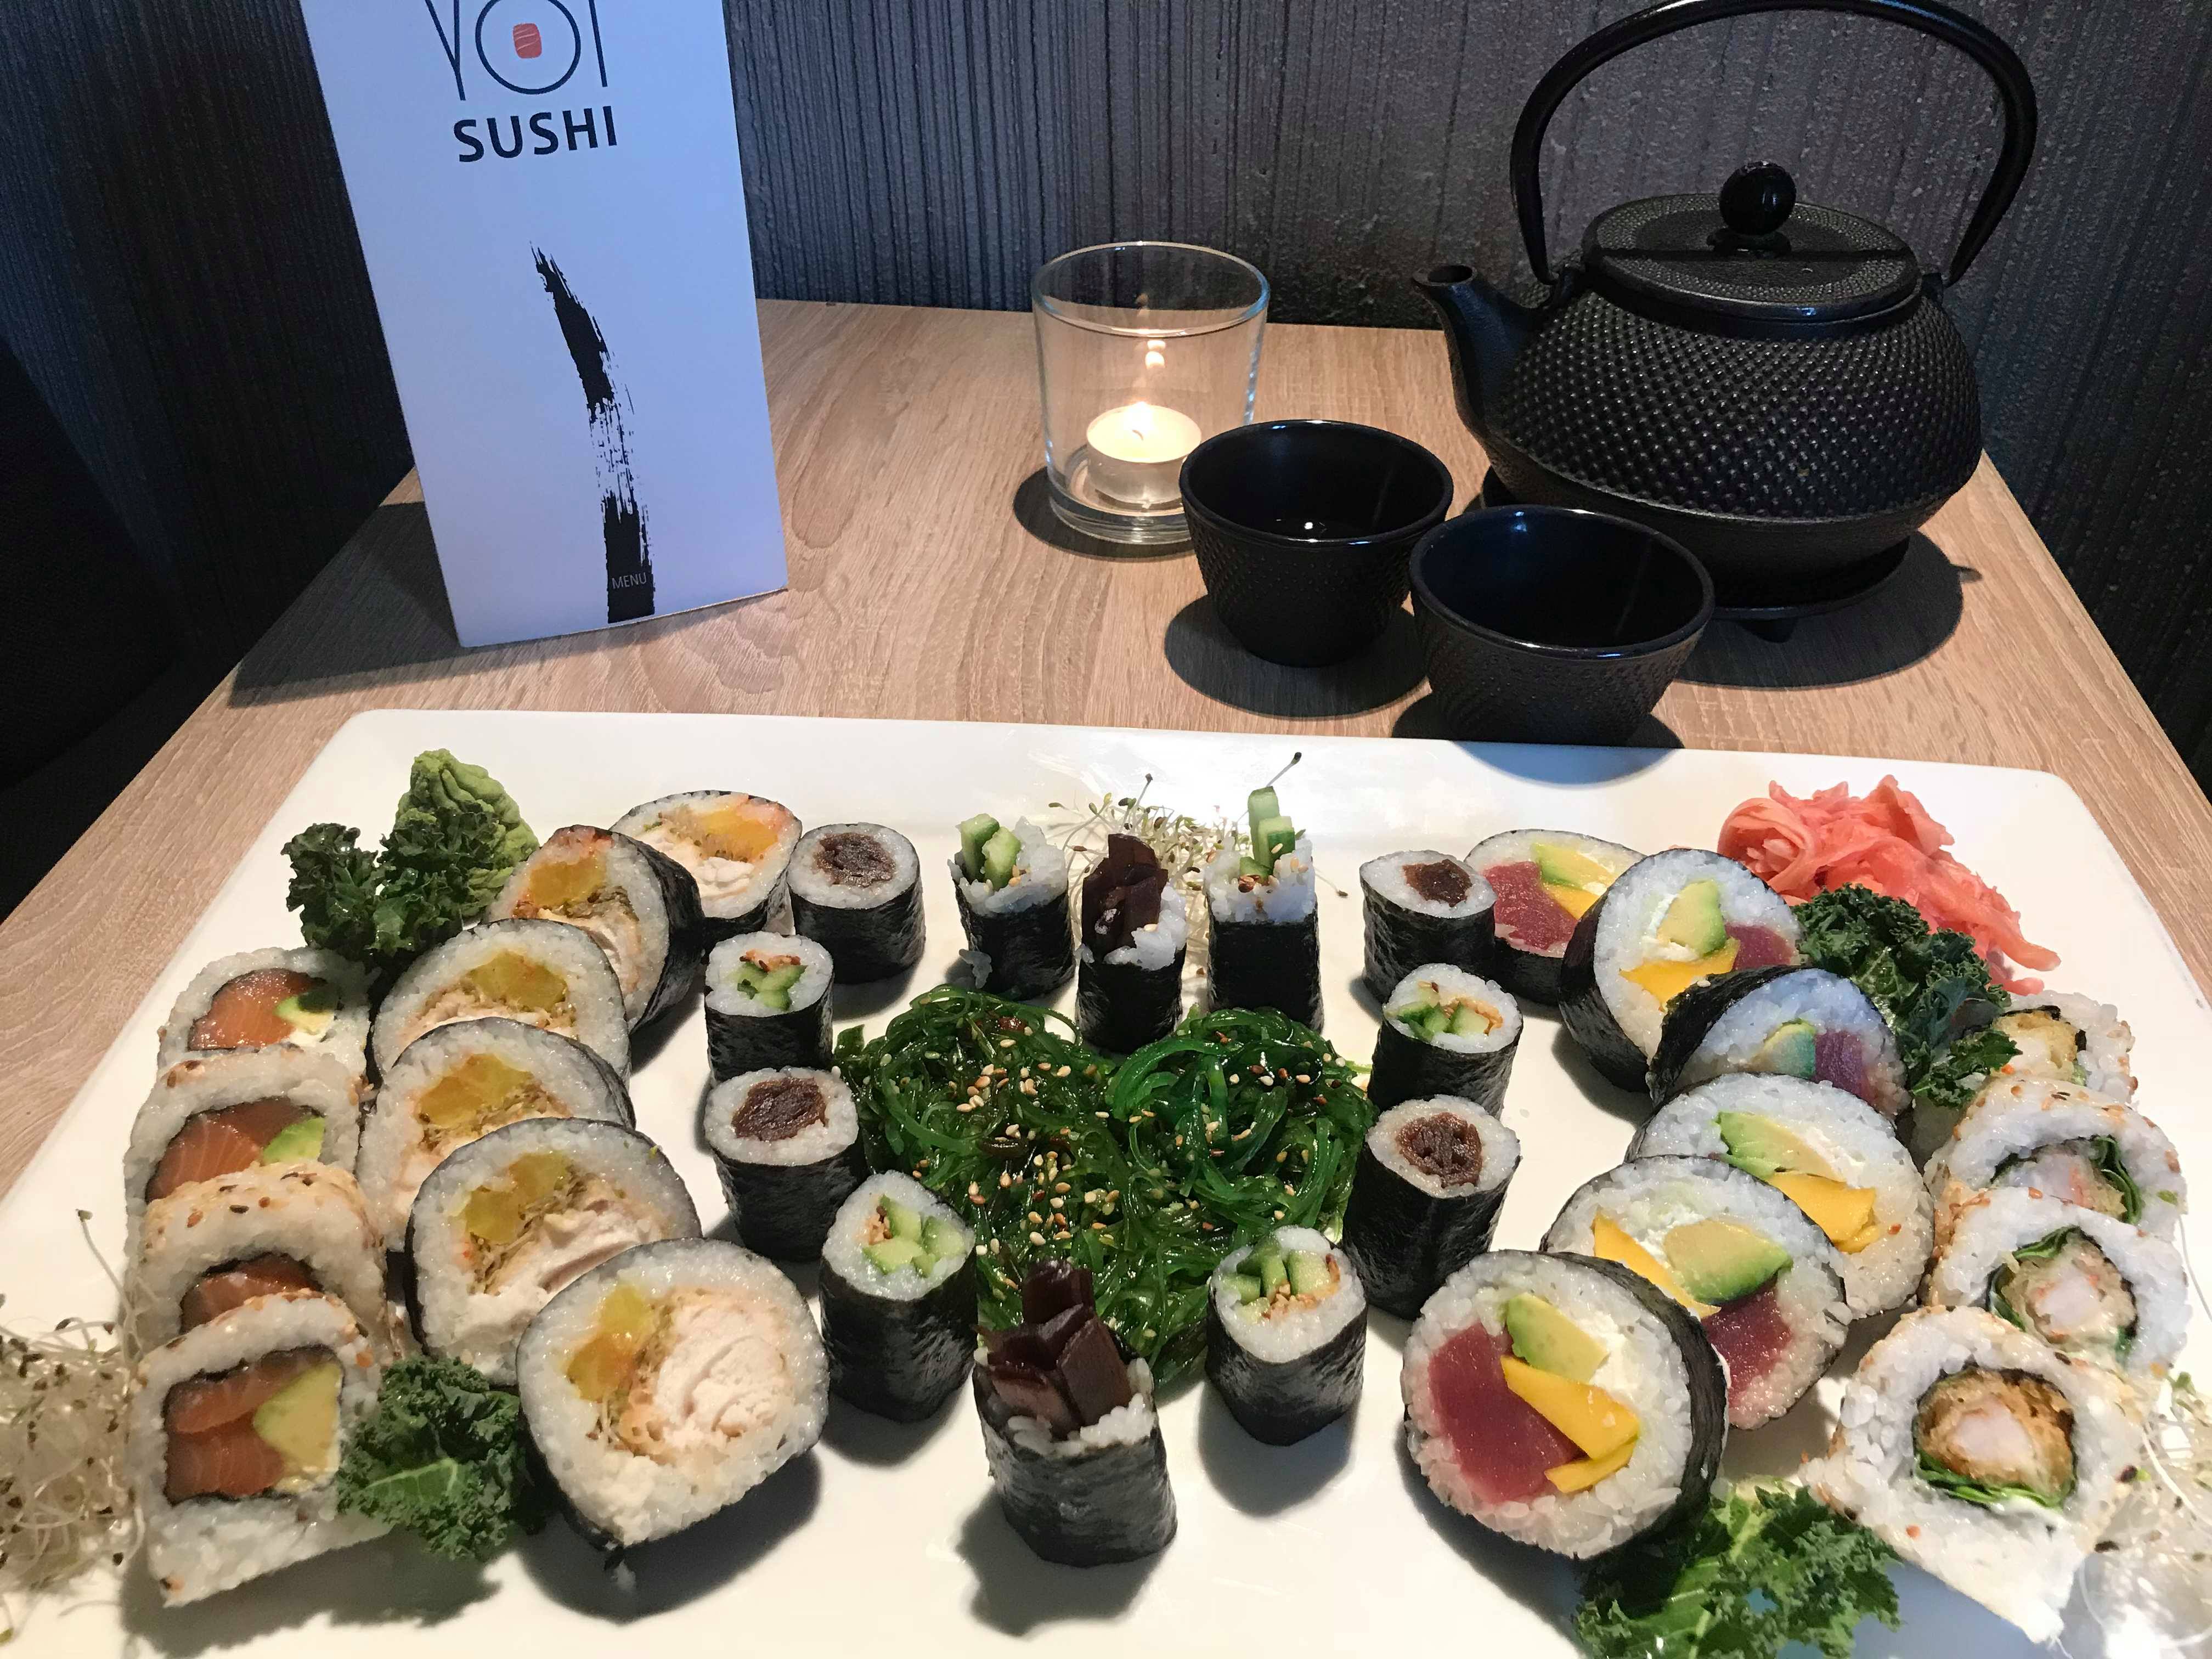 Restauracja Yoi Sushi Olsztyn - Weekend Walentynkowy